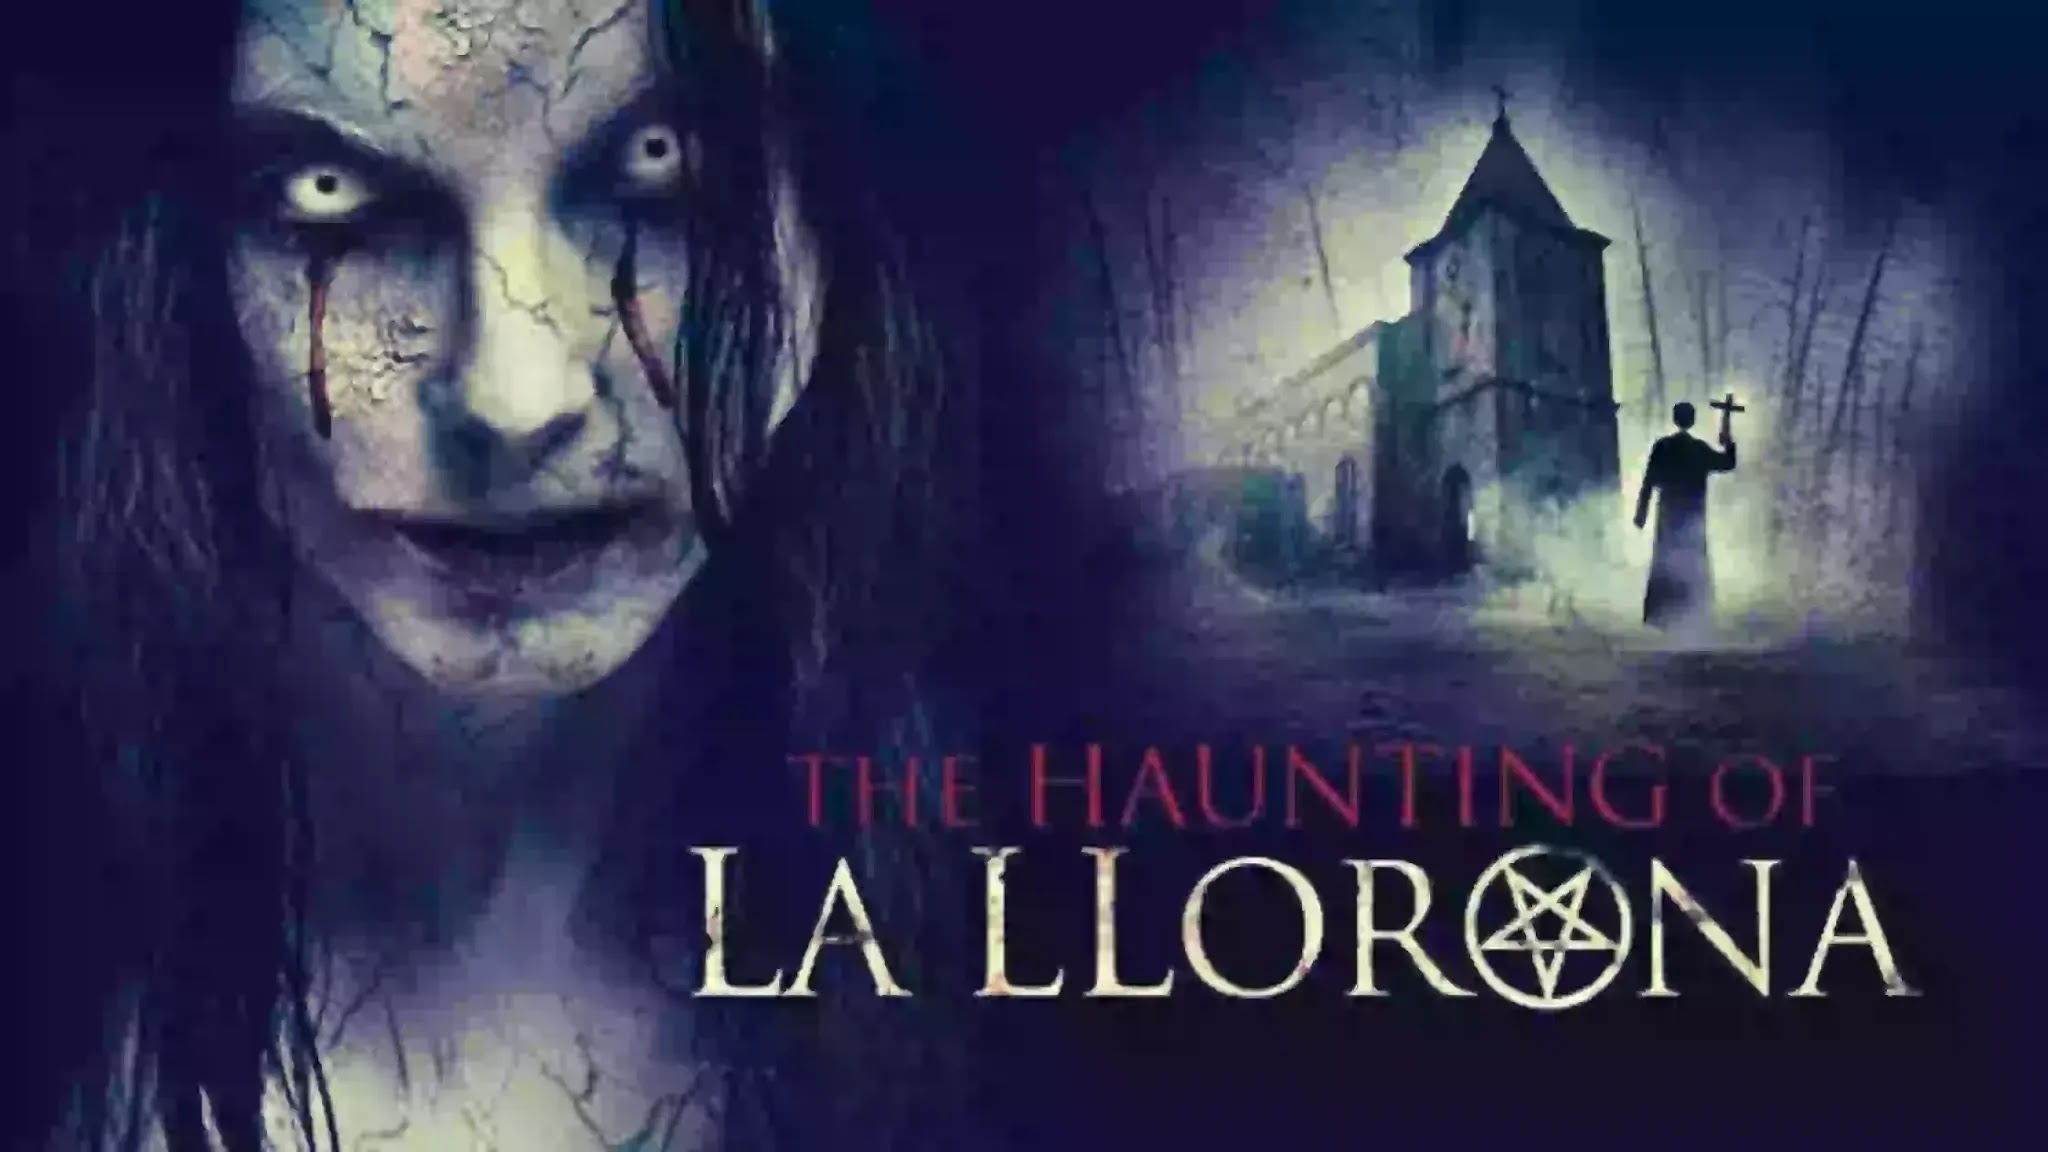 Film Adaptations of La Llorona